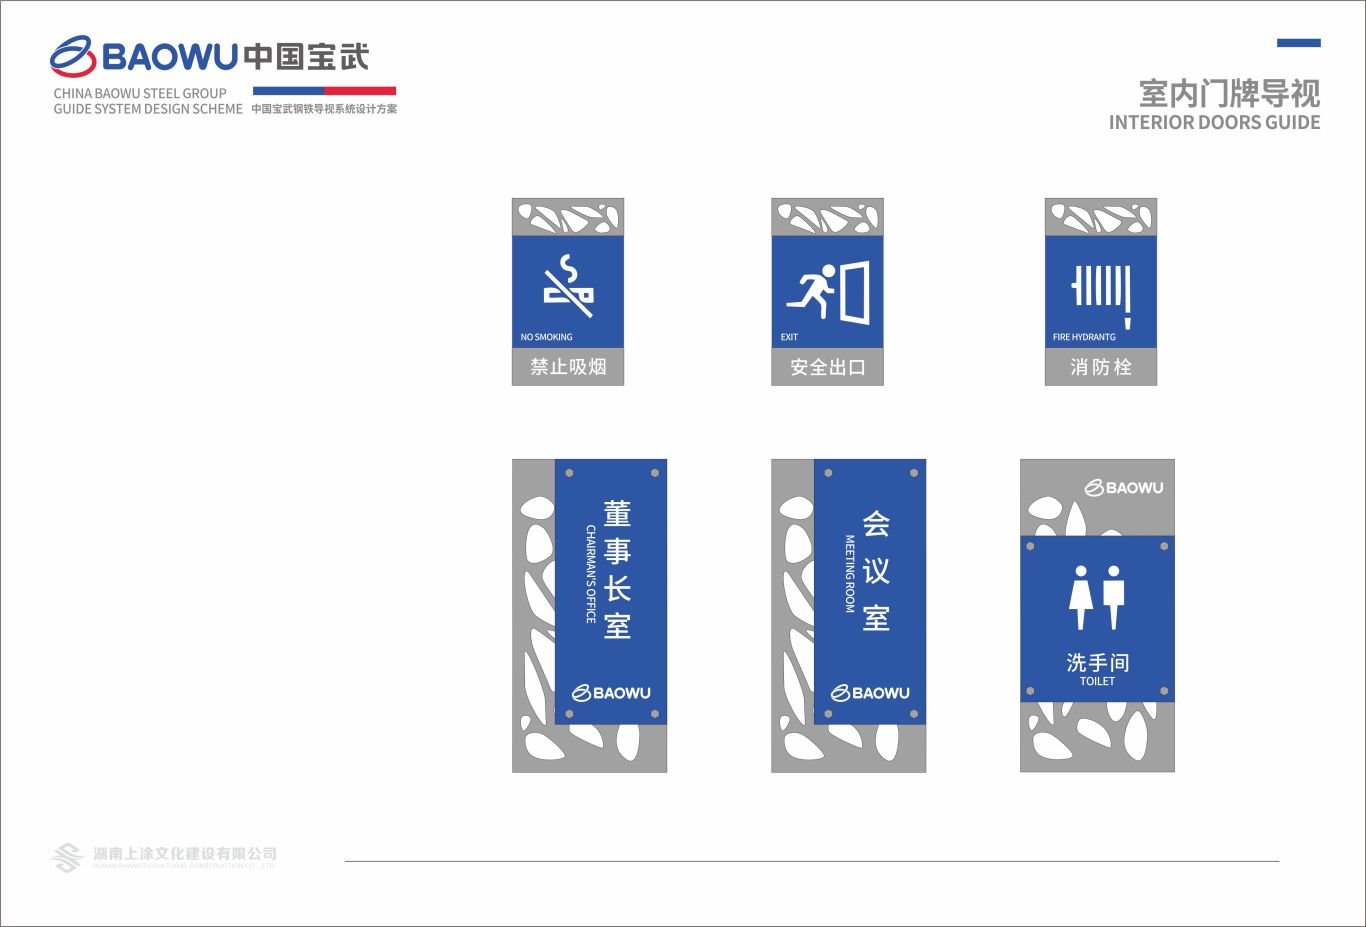 武宝钢铁集团导视系统设计图23